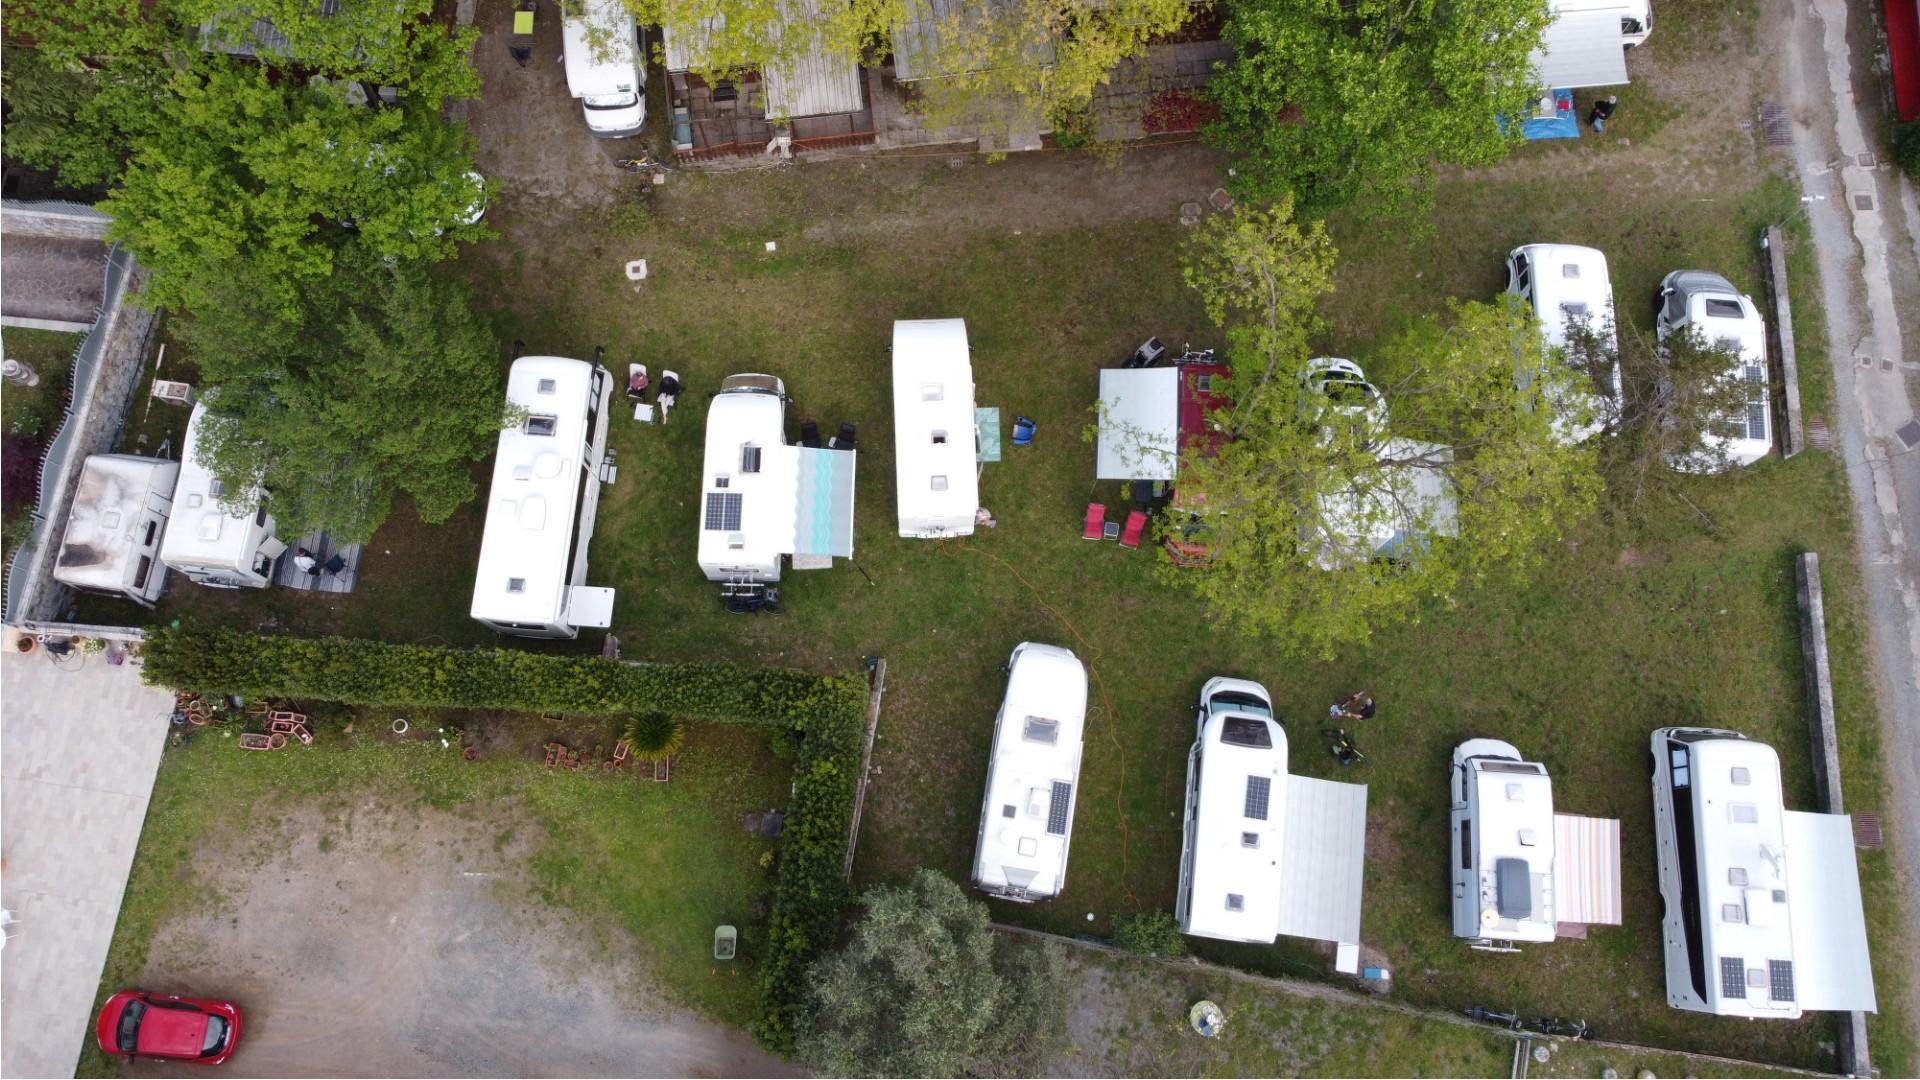 Vue aérienne d'un camping avec des camping-cars et caravanes stationnés.